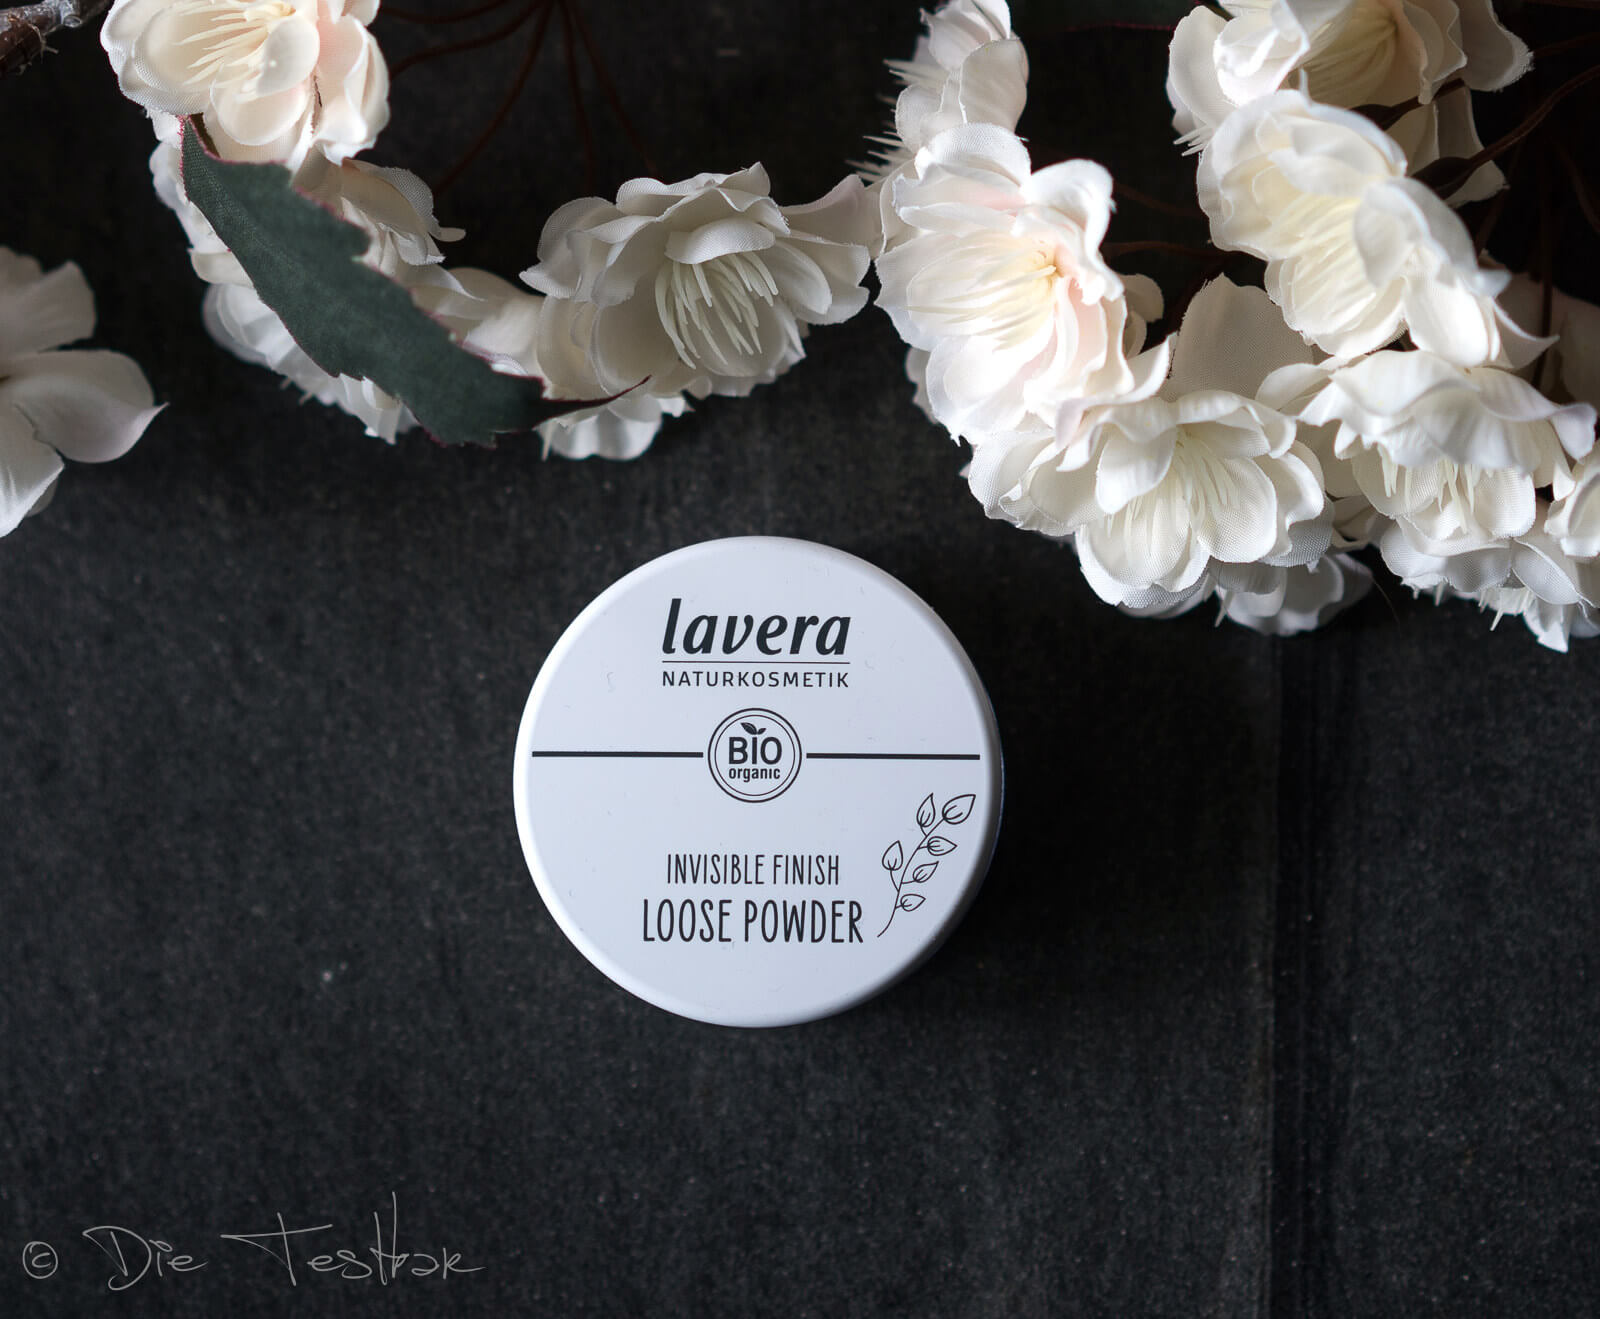 lavera - Dekorative Kosmetik - Neu im Sortiment - Bronzer, Rouge, Grundierung und Eyeshadows 3